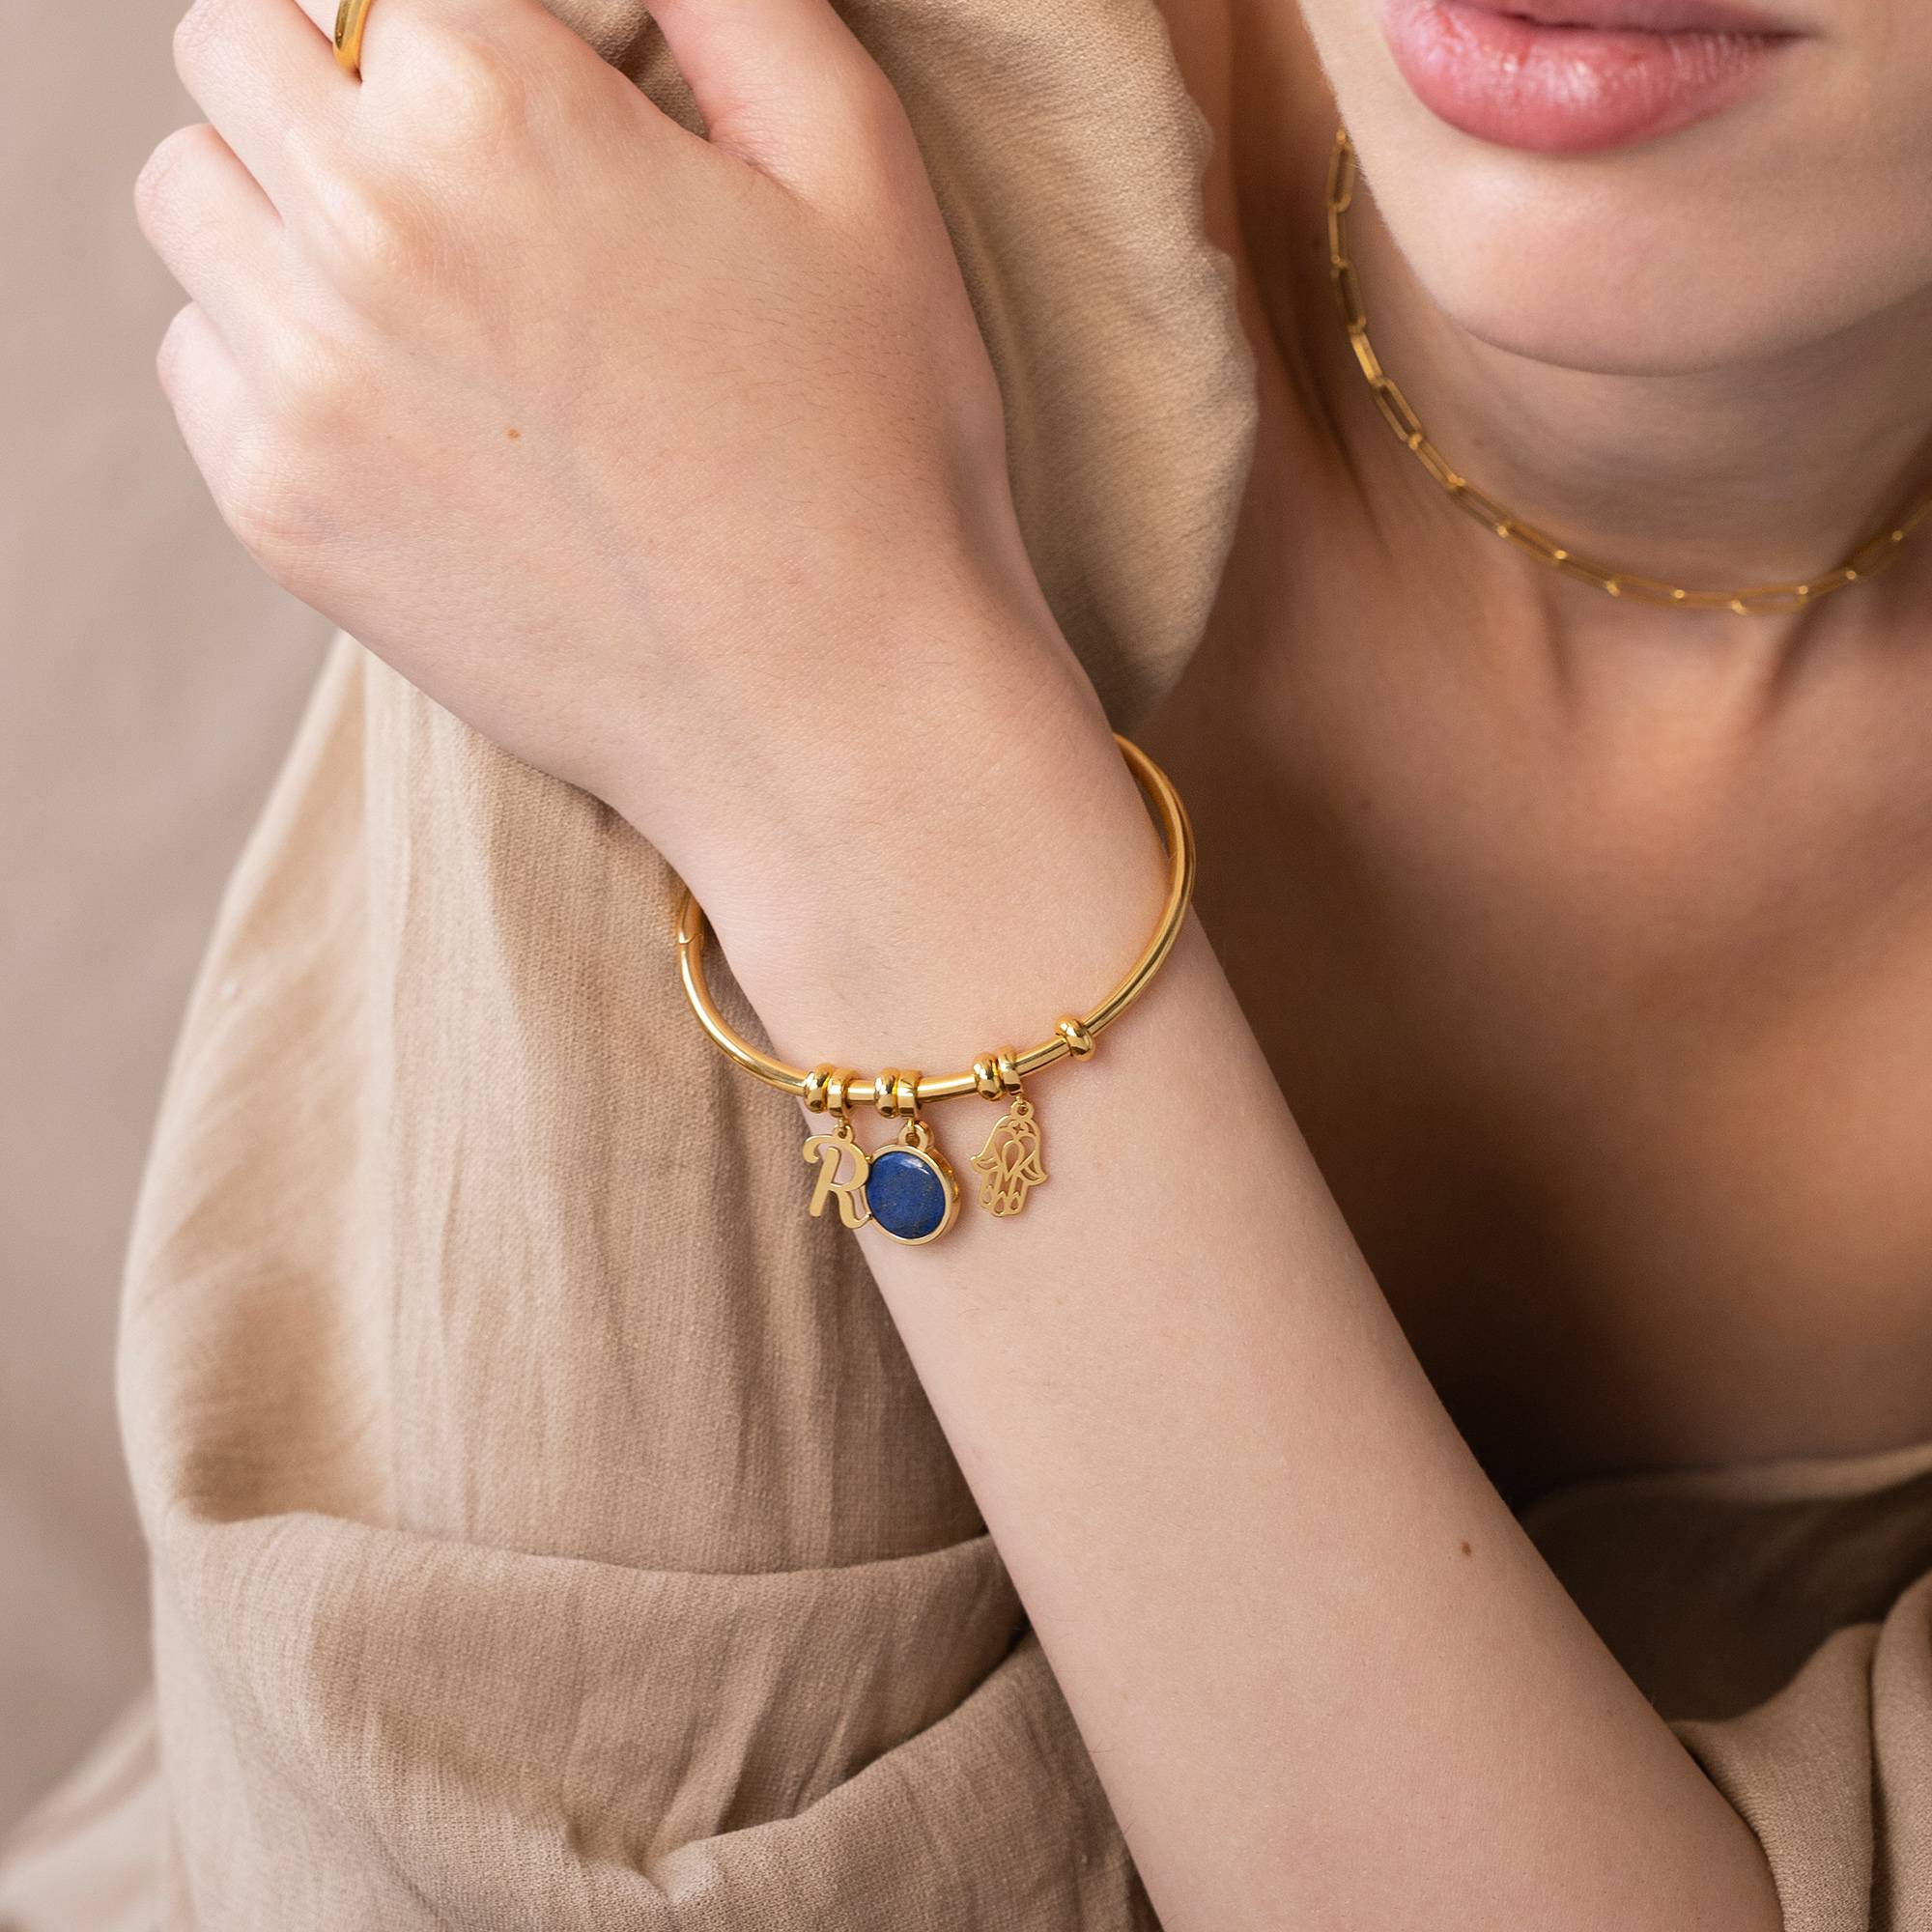 18k Goud Vergulde Symbolische Initiaal Bangle Armband met Halfedelsteen-1 Productfoto